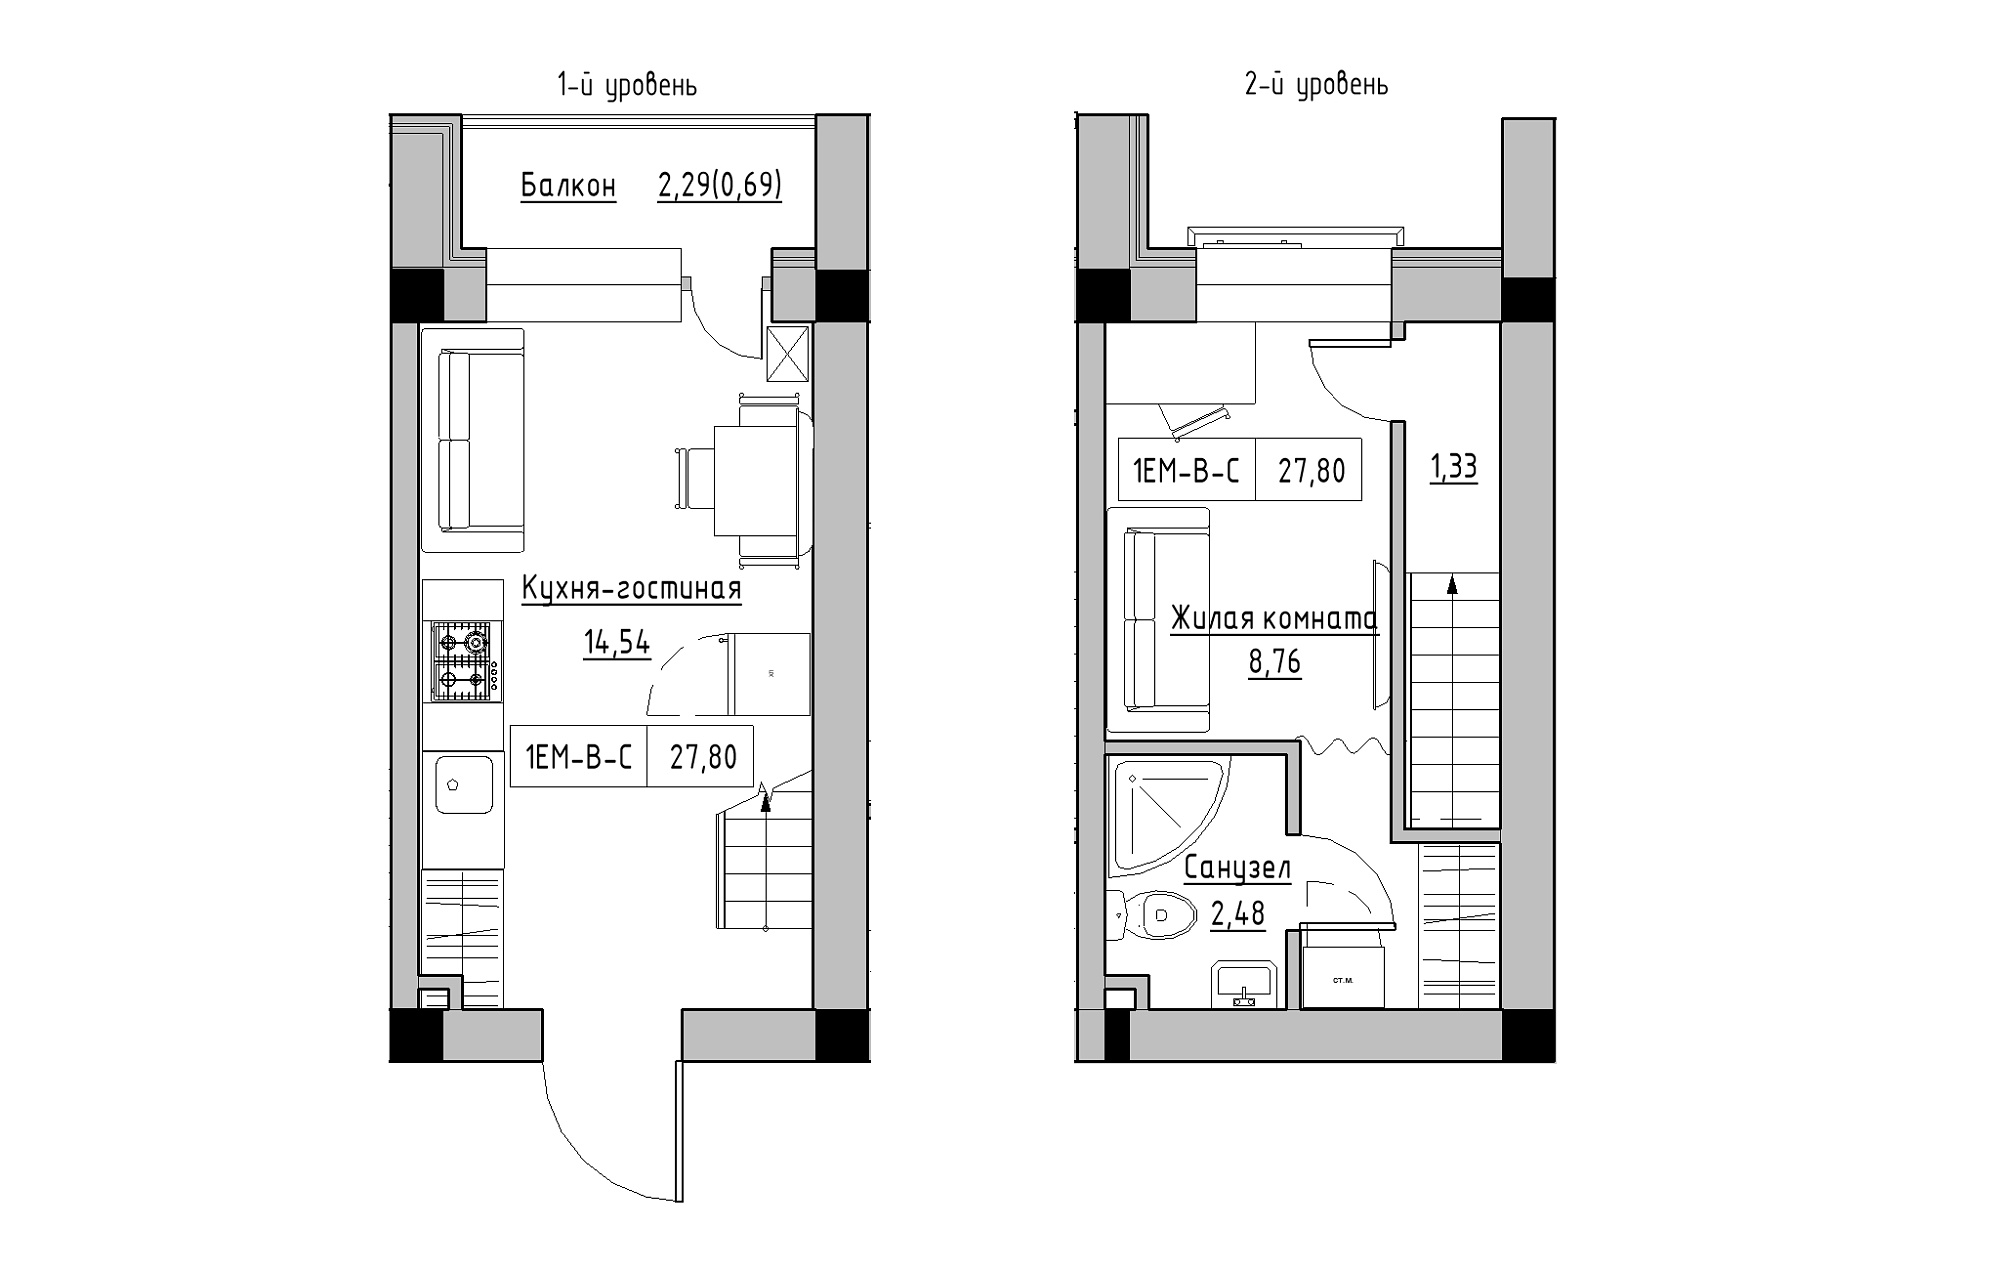 Planning 2-lvl flats area 27.8m2, KS-018-05/0010.